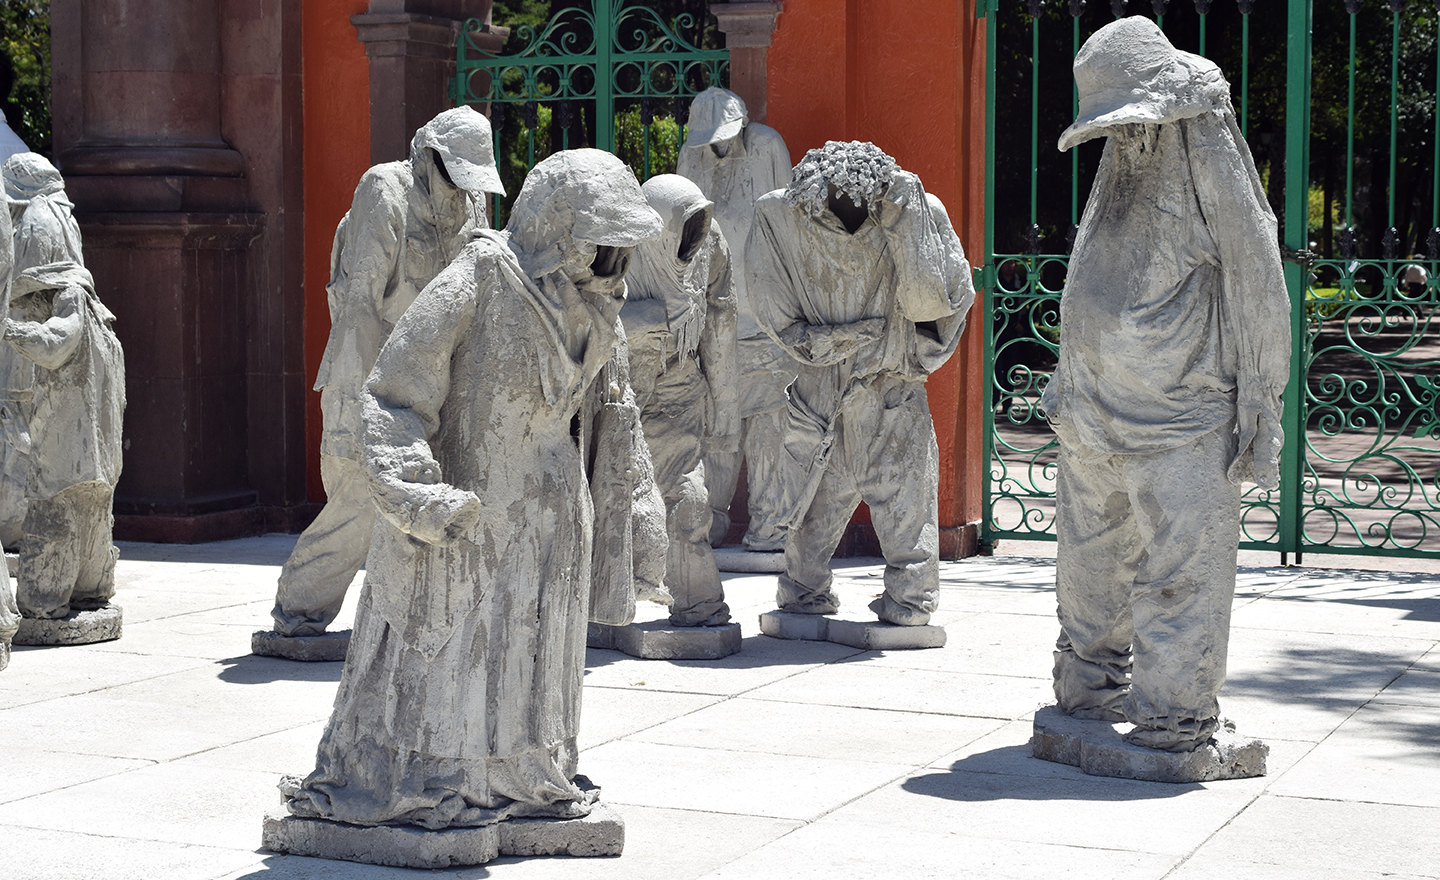  Esculturas exploran a la sociedad mexicana a través de los números